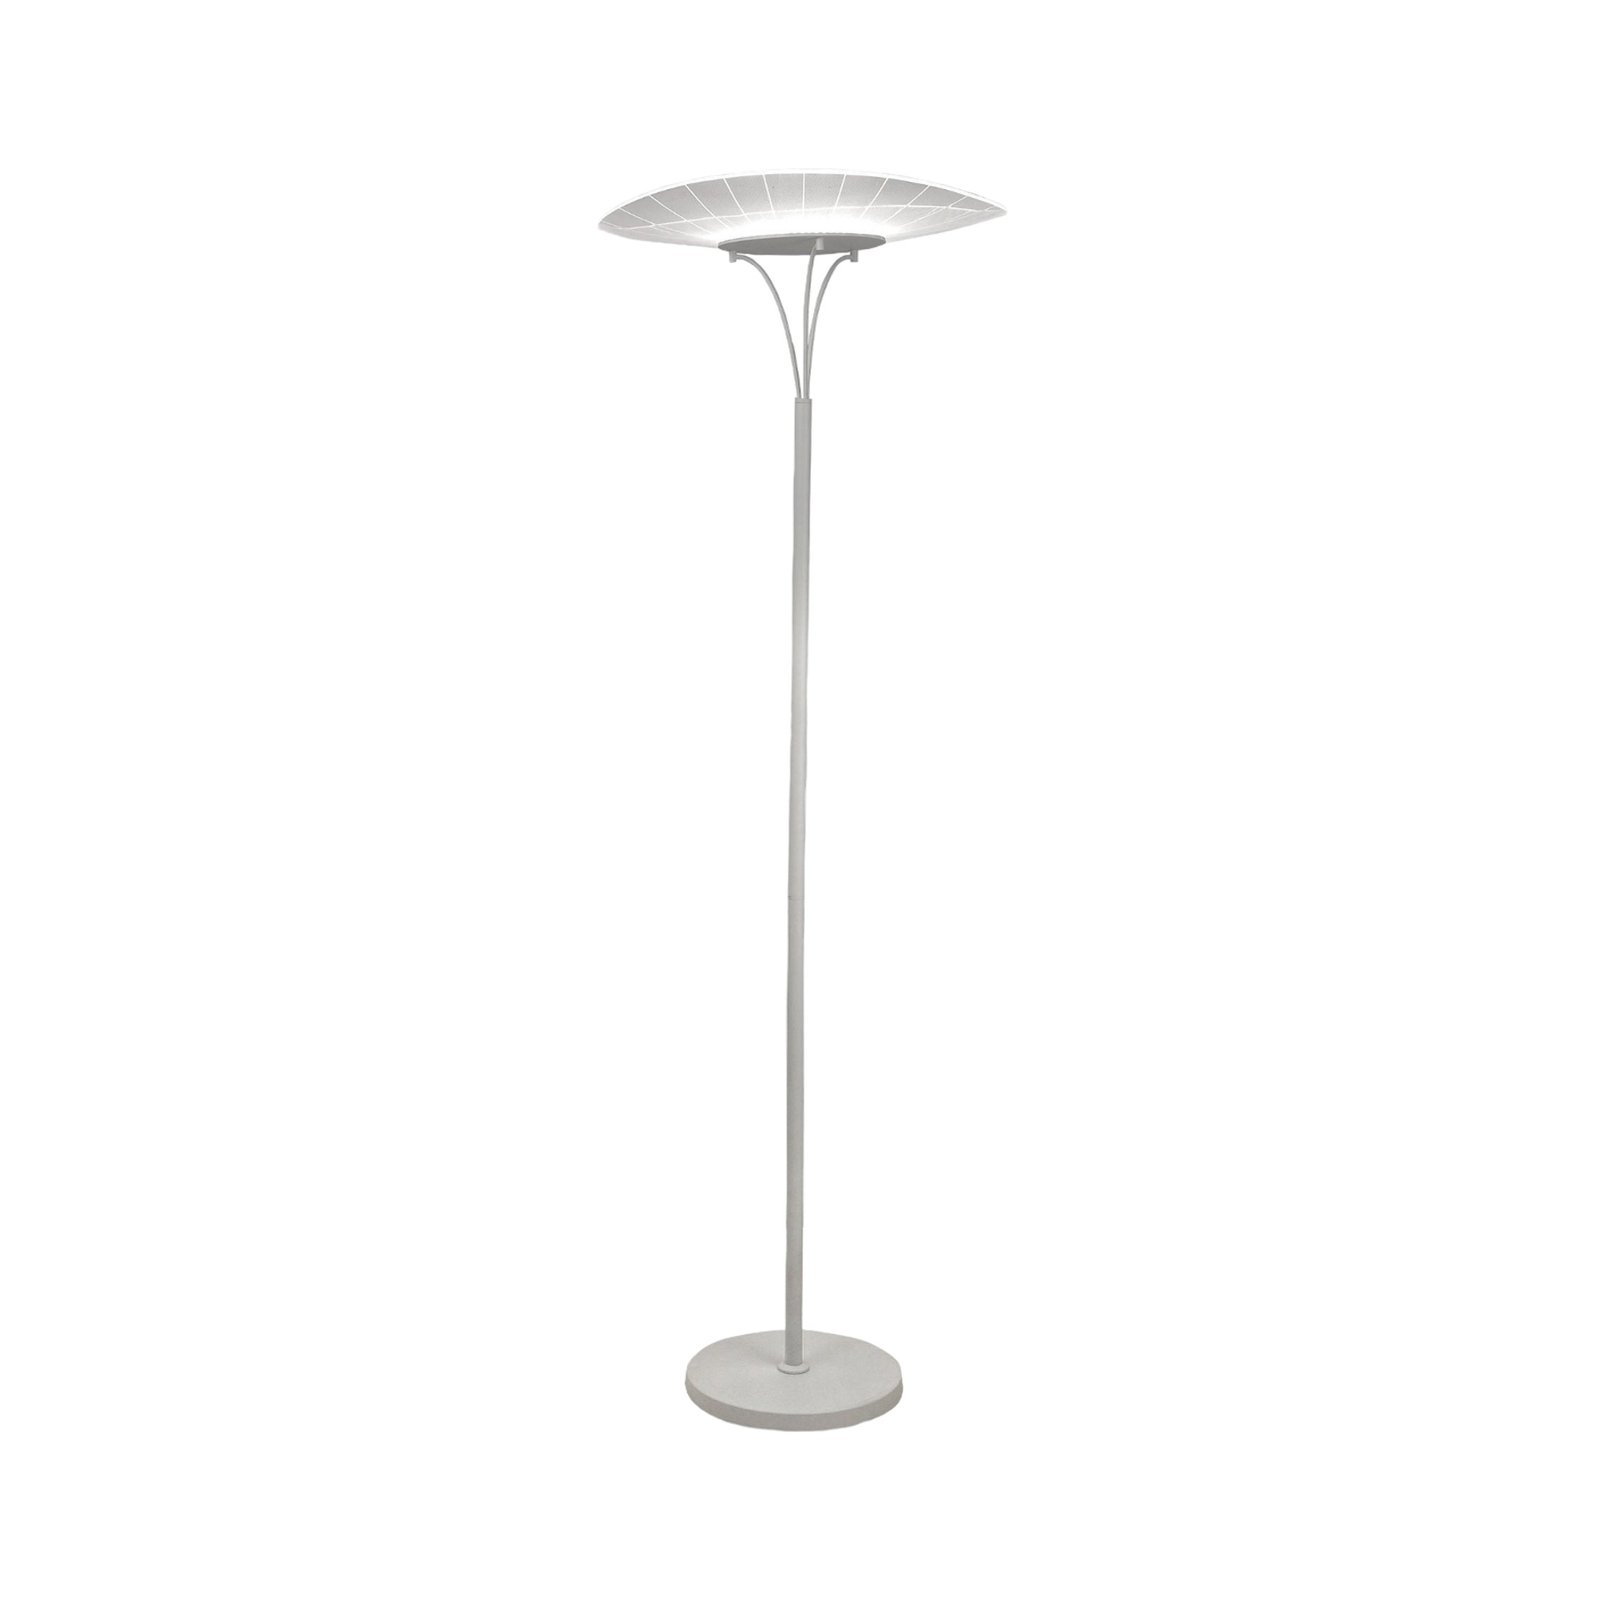 LED vloerlamp Vela, wit/transparant, 175cm, acryl, dimmer